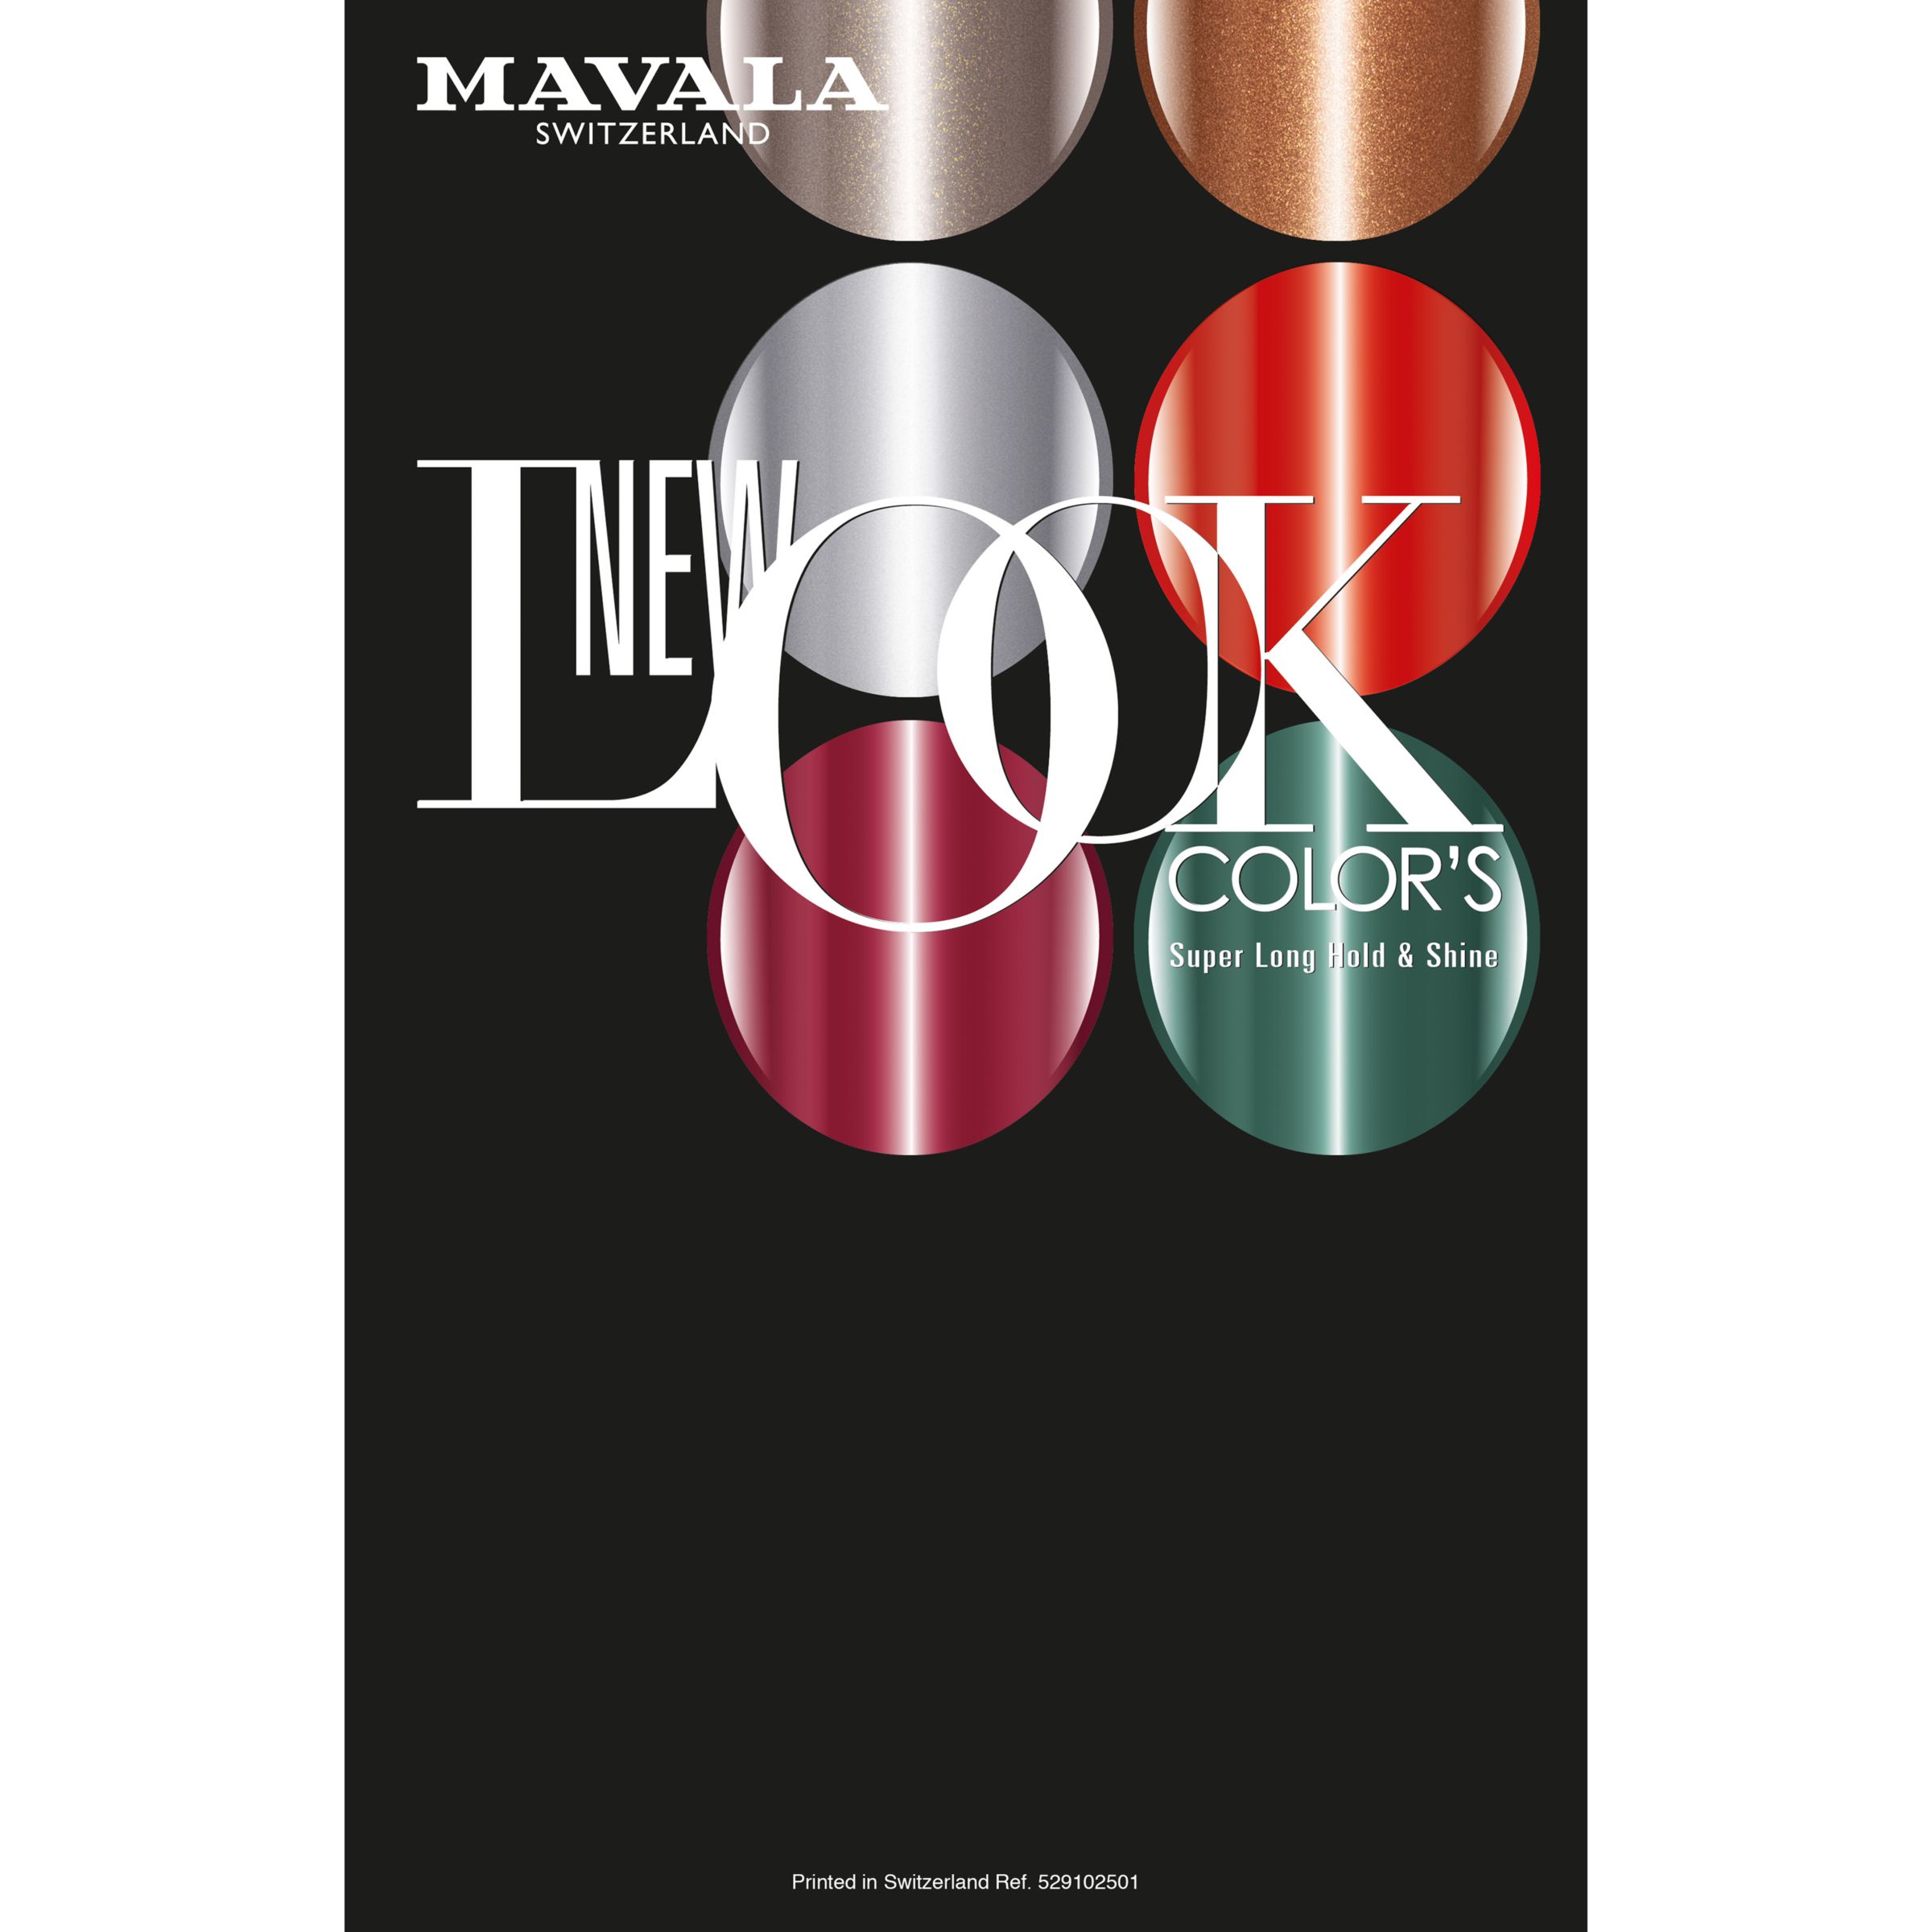 Mavala Nail Colour - New Look Collection, Copenhagen 3